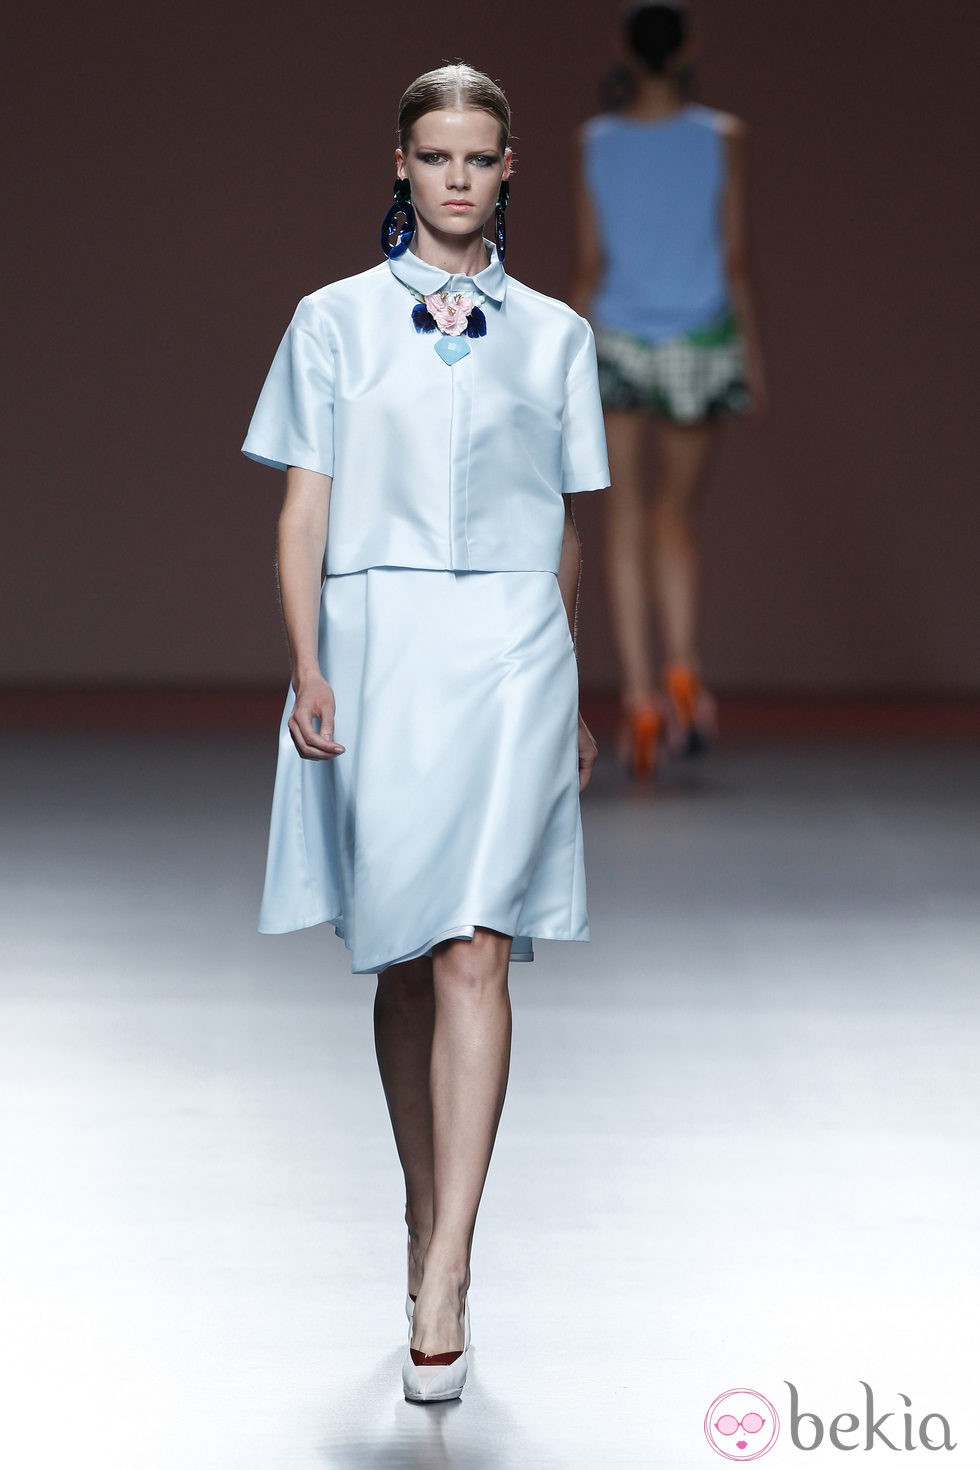 Chaqueta y falda azul bebé de la colección primavera/verano 2014 de Moisés Nieto en Madrid Fashion Week